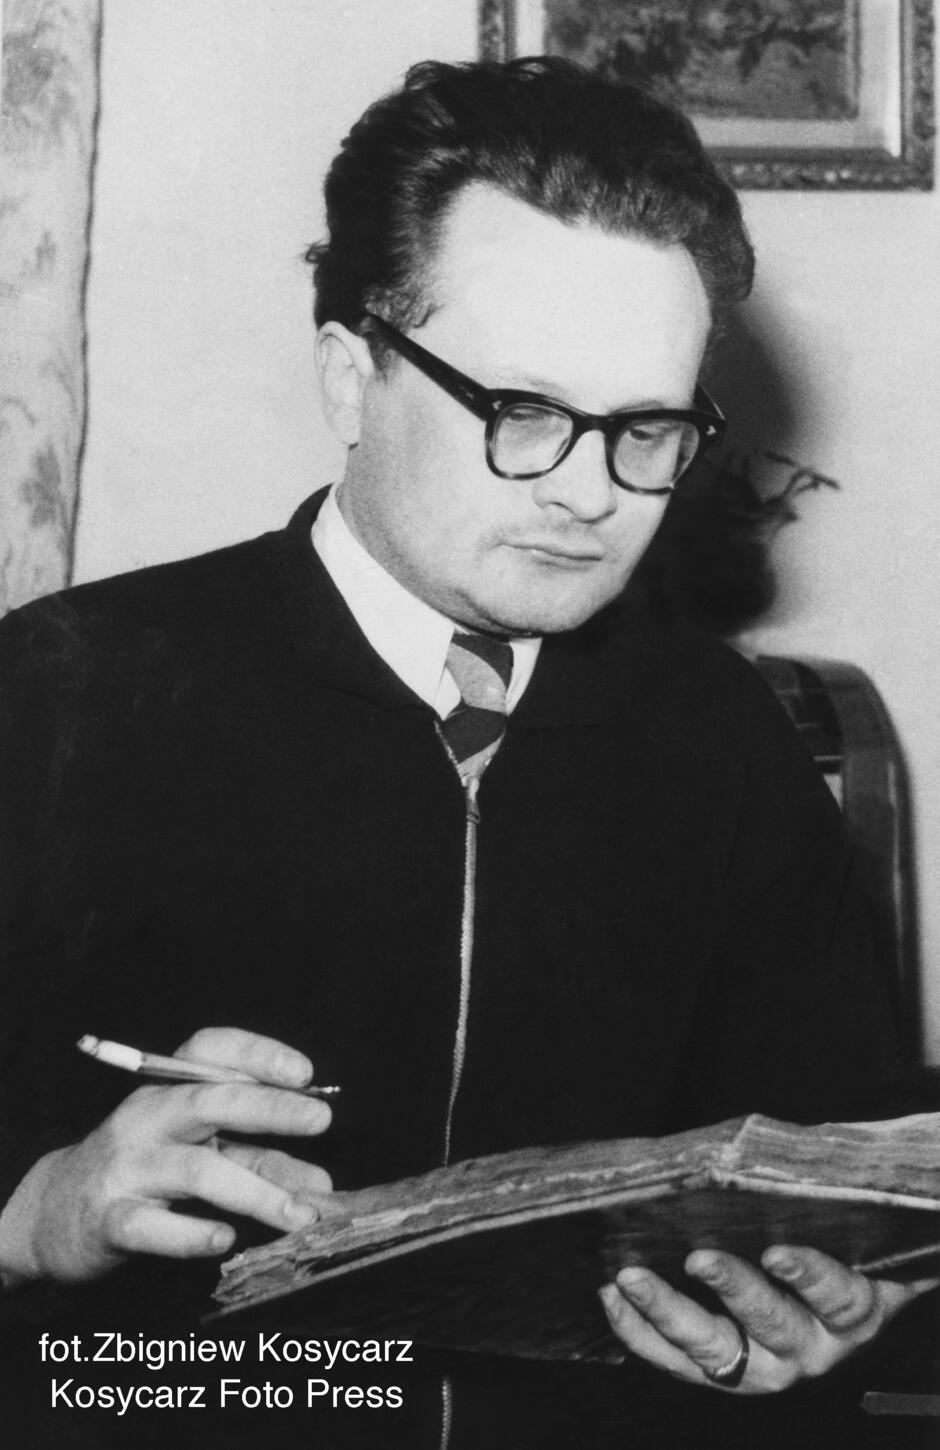 czarno-białe zdjęcie młodego mężczyzny w okularach pochylającego się nad książką z papierosem w ręce